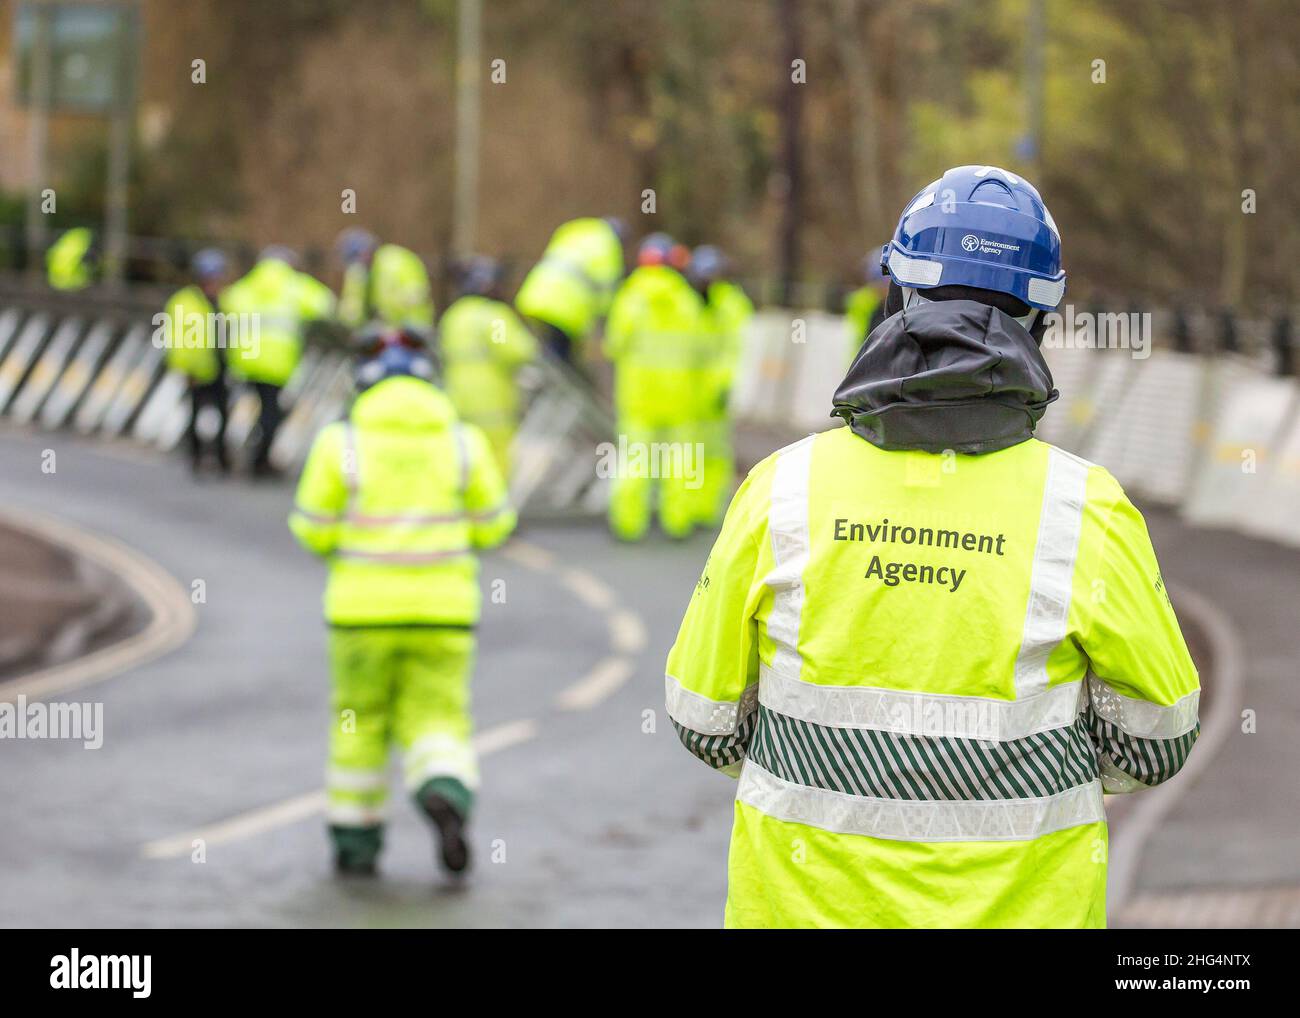 Rückansicht von Mitarbeitern des Umweltbundesamtes in Sichtjacken, die Hochwasserbarrieren errichten, Bewdley, Worcester, Großbritannien. Stockfoto